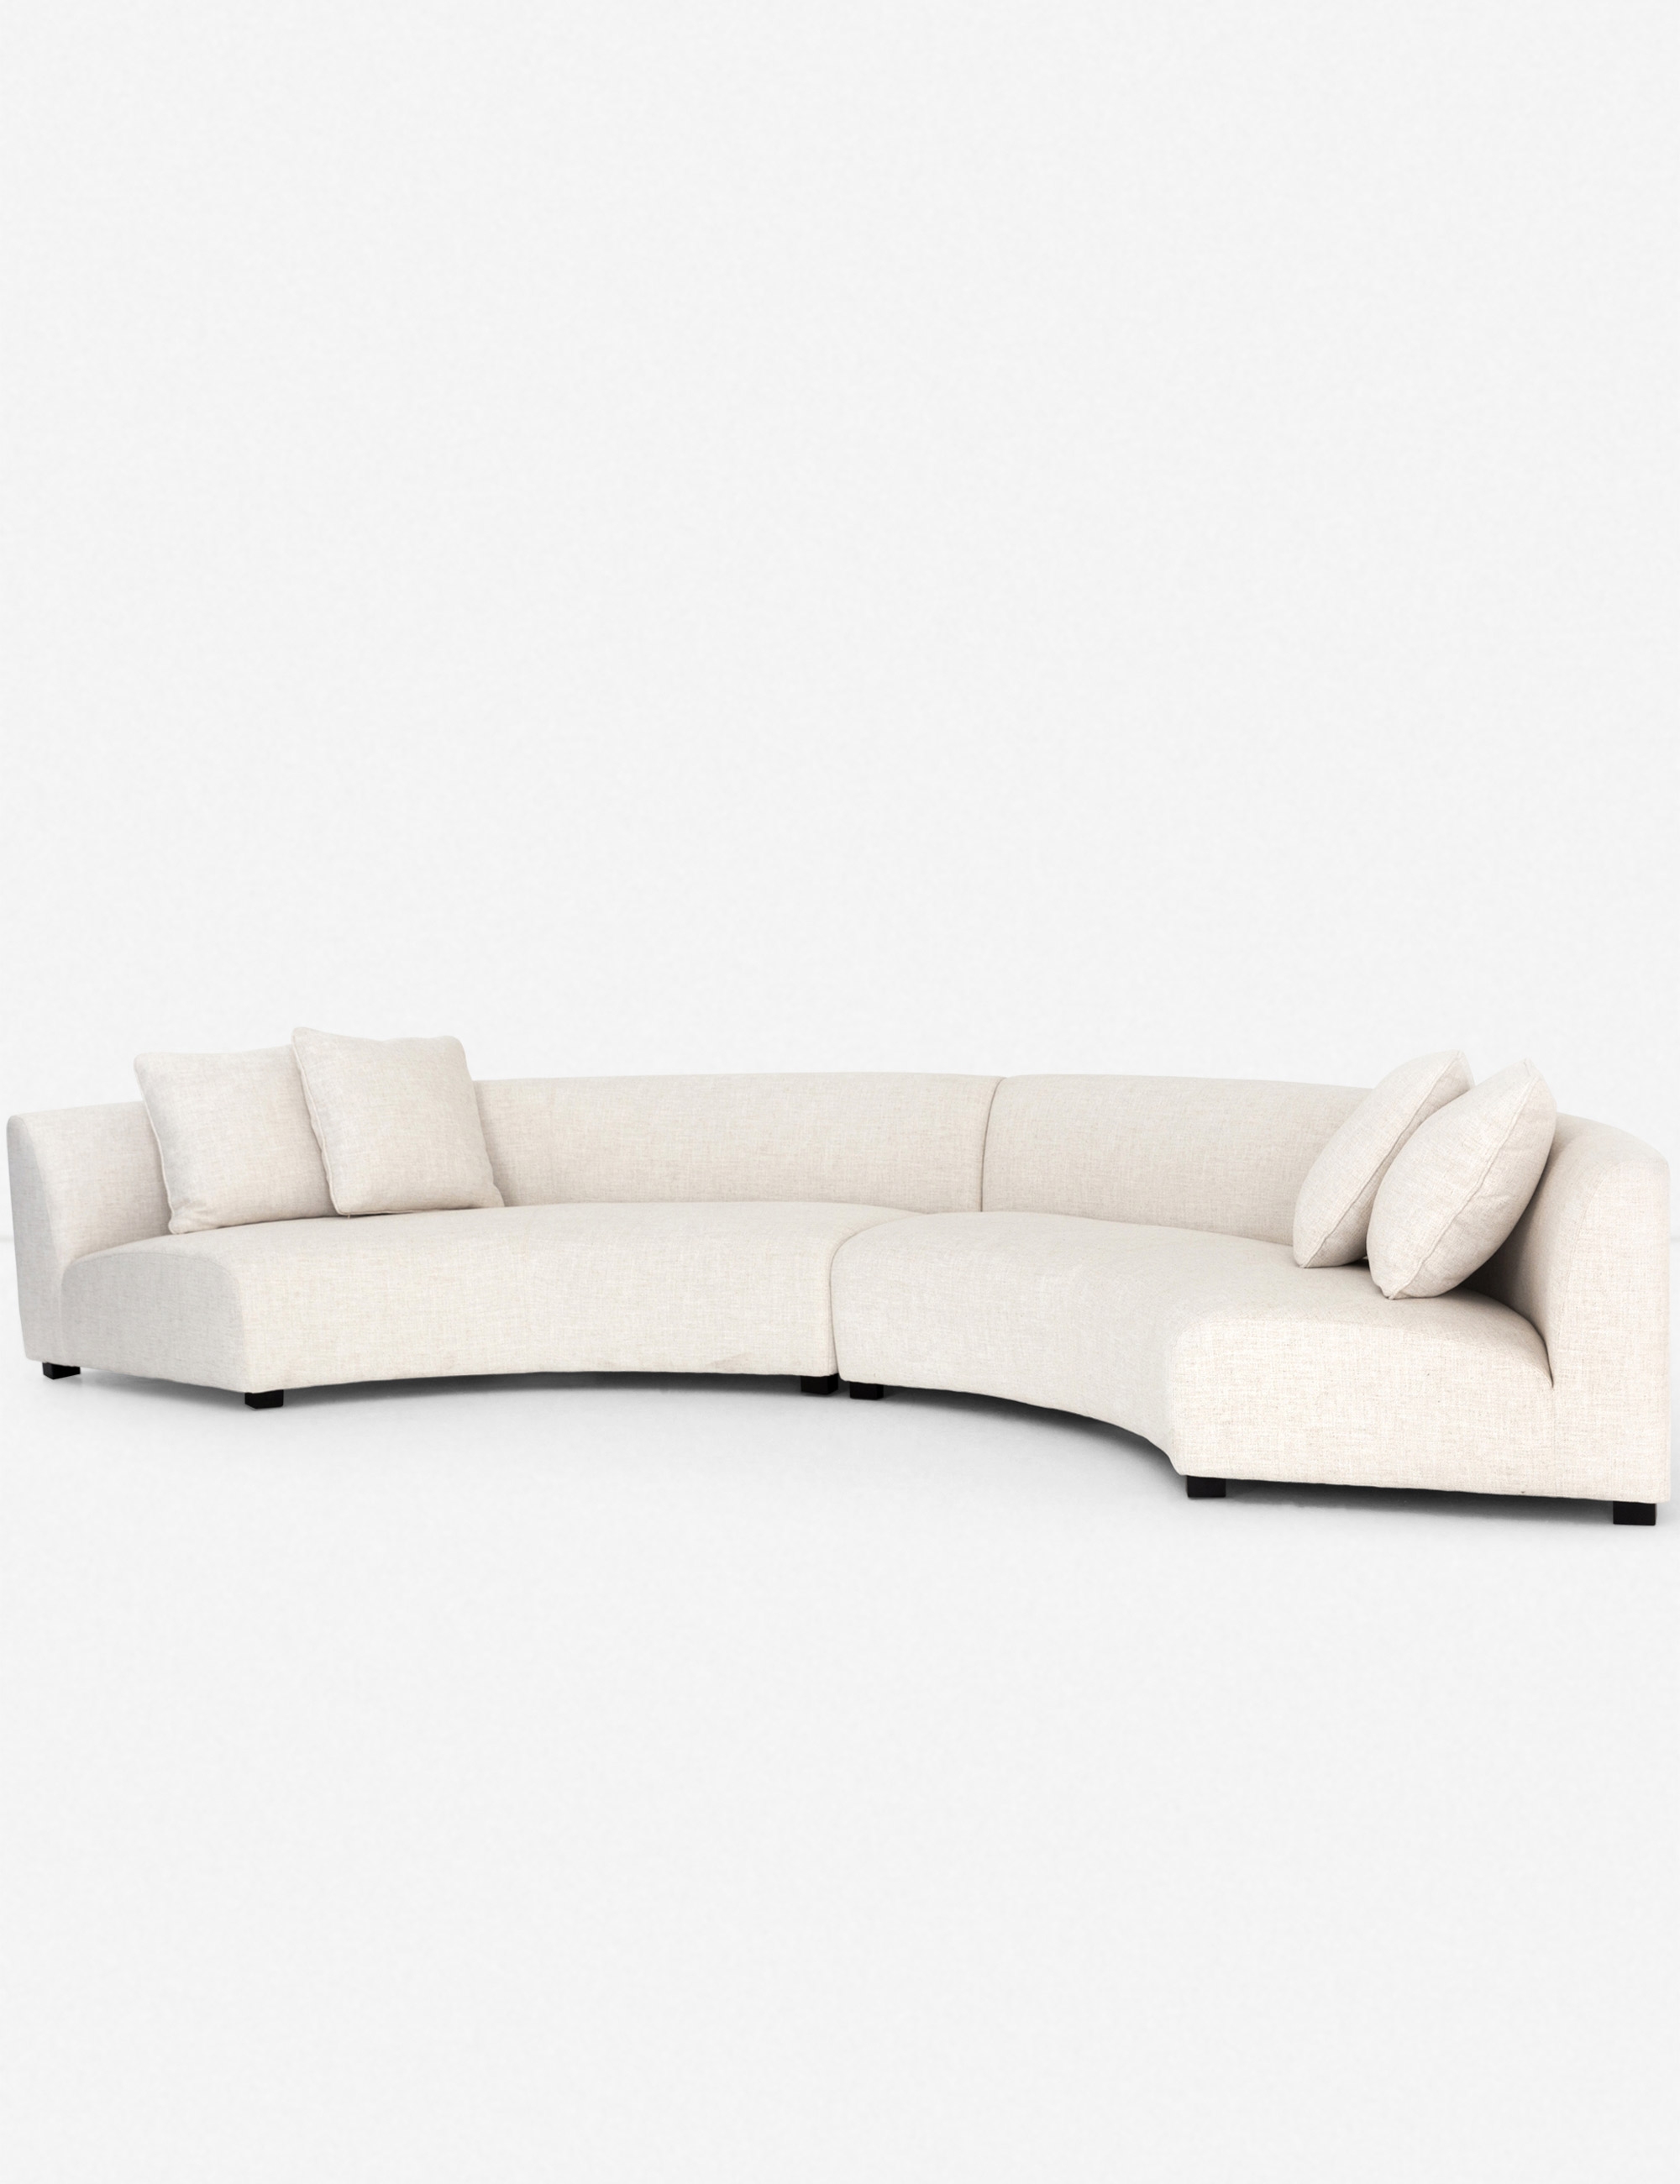 Saban 2-Piece Curved Sectional Sofa - Image 2